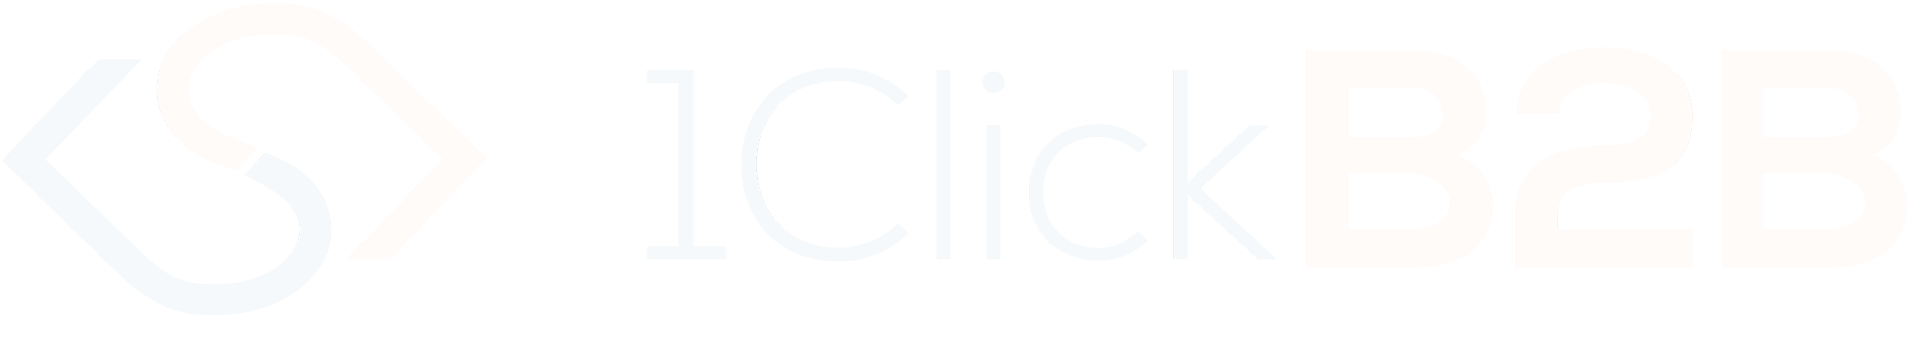 1ClickShop